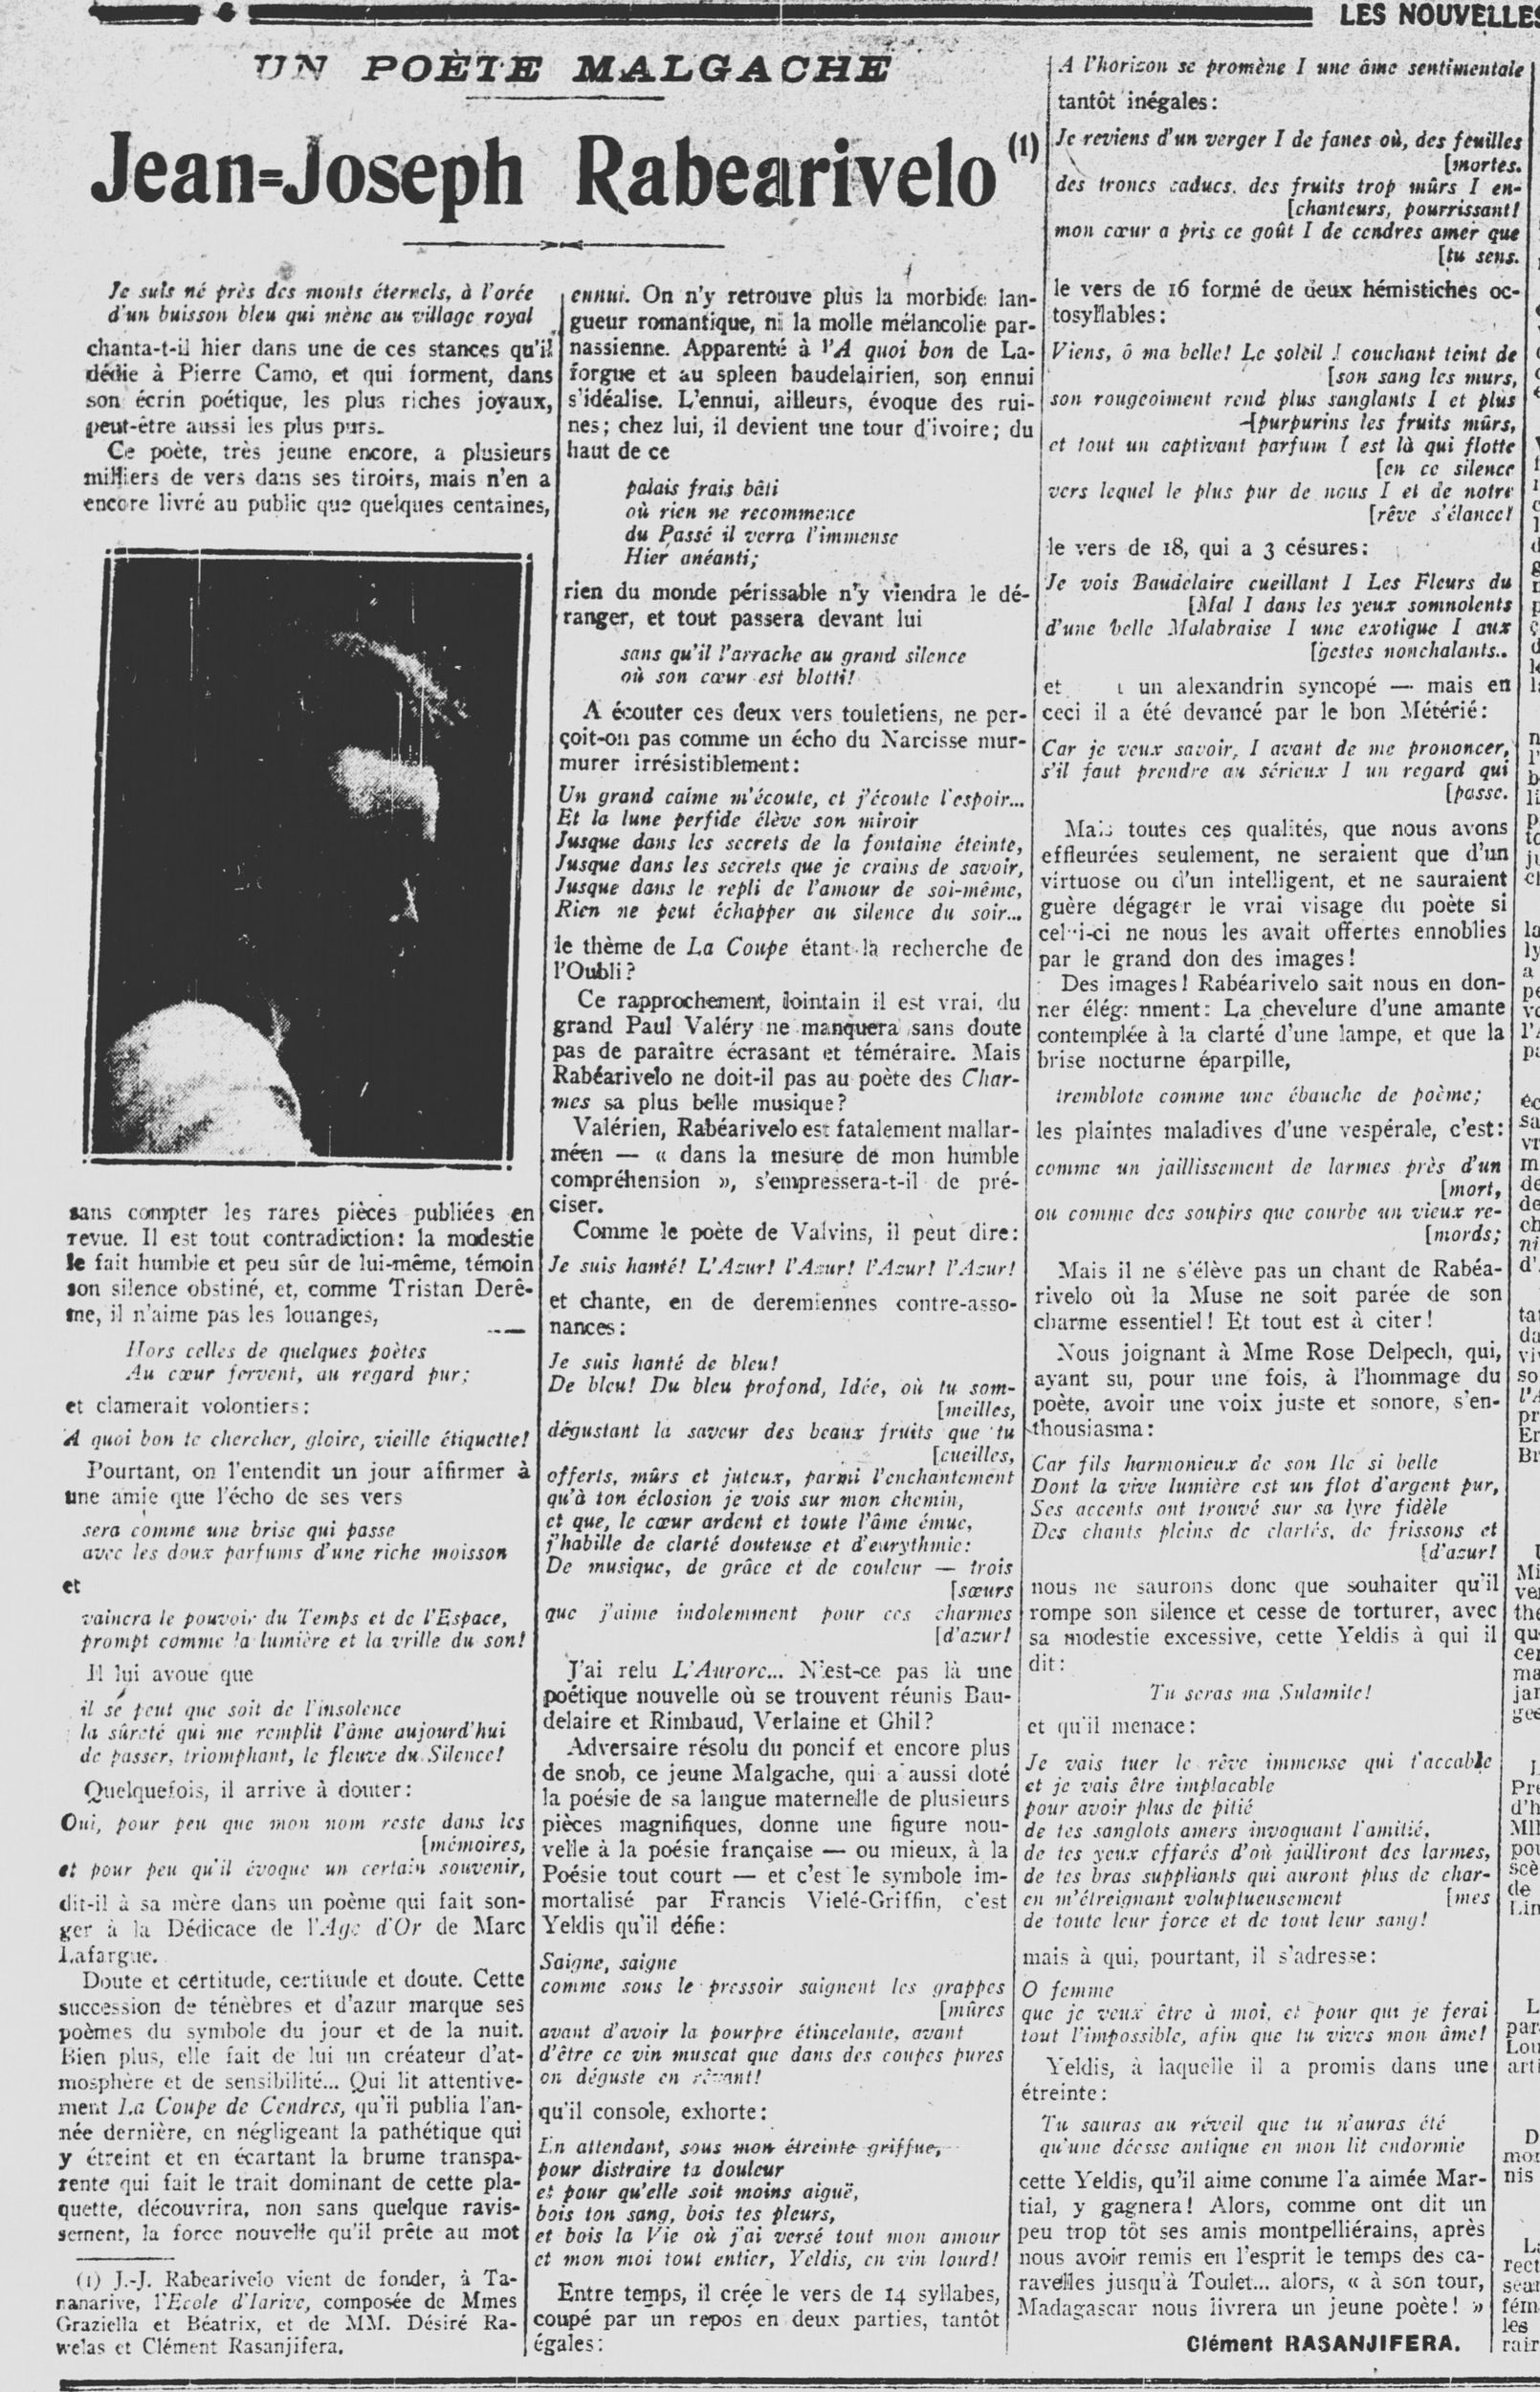 Les nouvelles littéraires 07-11-1925.jpg